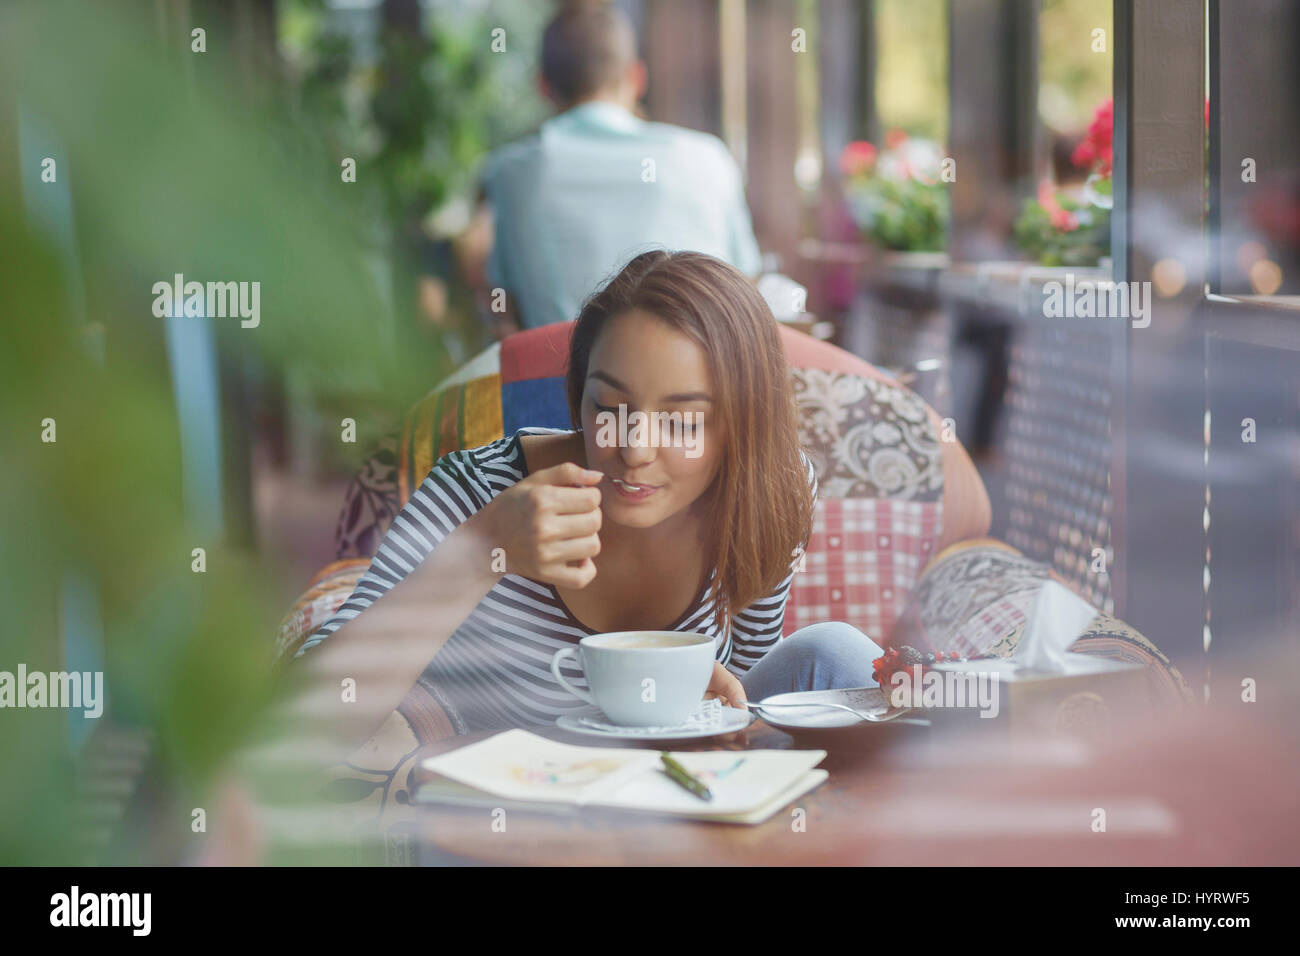 Giovane donna seduta indoor in ambiente urbano cafe. Cafe lo stile di vita della città. Casual ritratto della ragazza adolescente Foto Stock